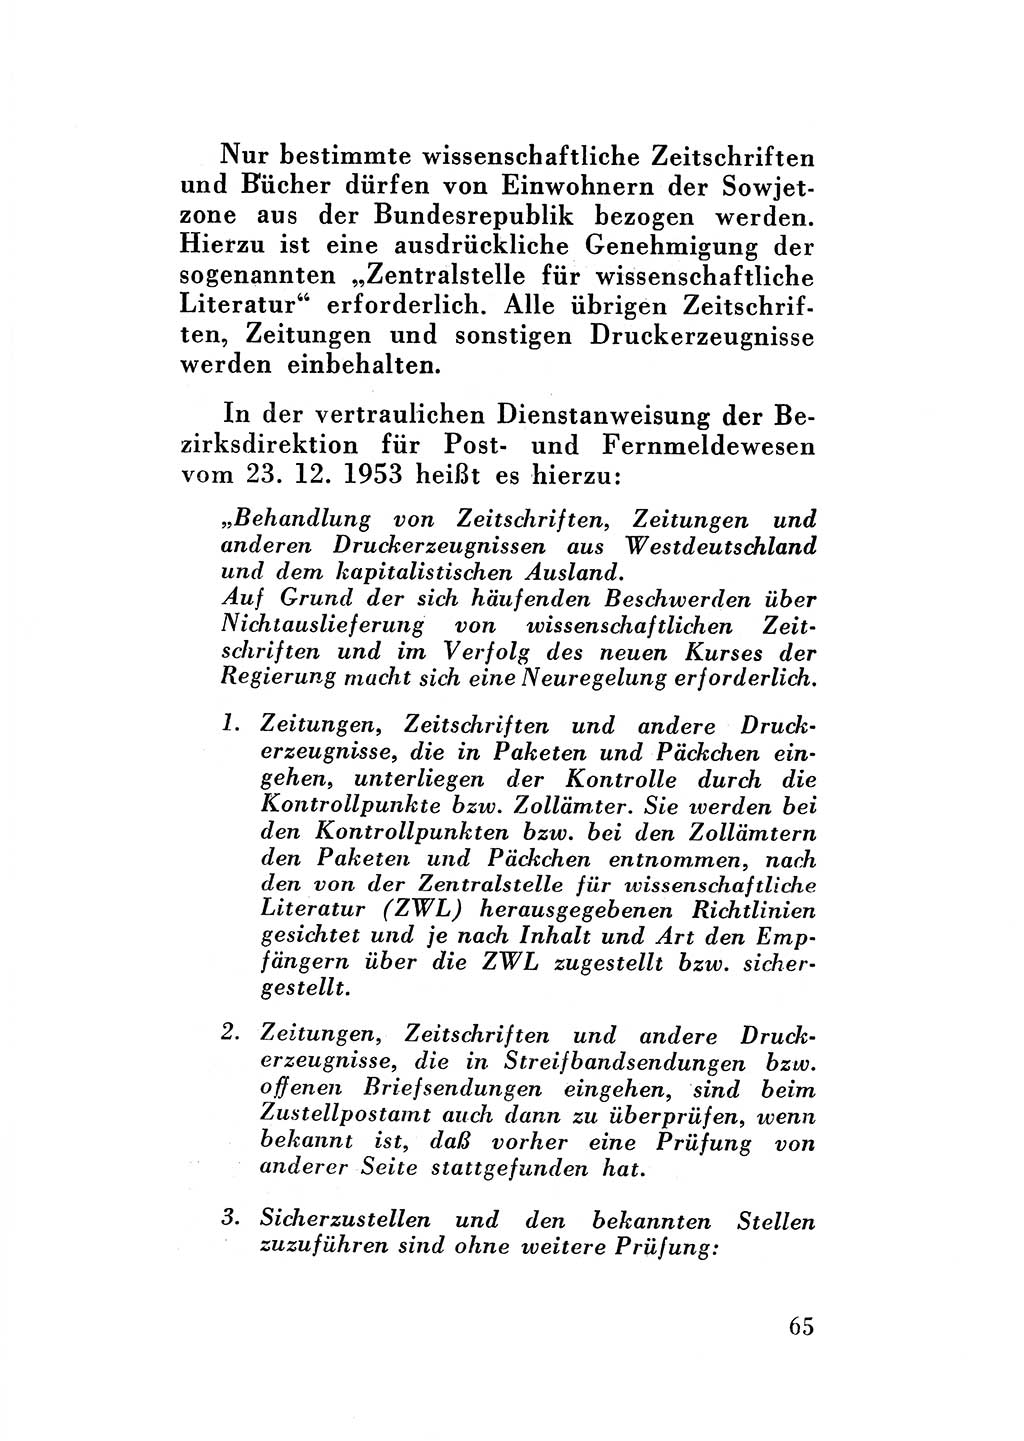 Katalog des Unrechts, Untersuchungsausschuß Freiheitlicher Juristen (UfJ) [Bundesrepublik Deutschland (BRD)] 1956, Seite 65 (Kat. UnR. UfJ BRD 1956, S. 65)